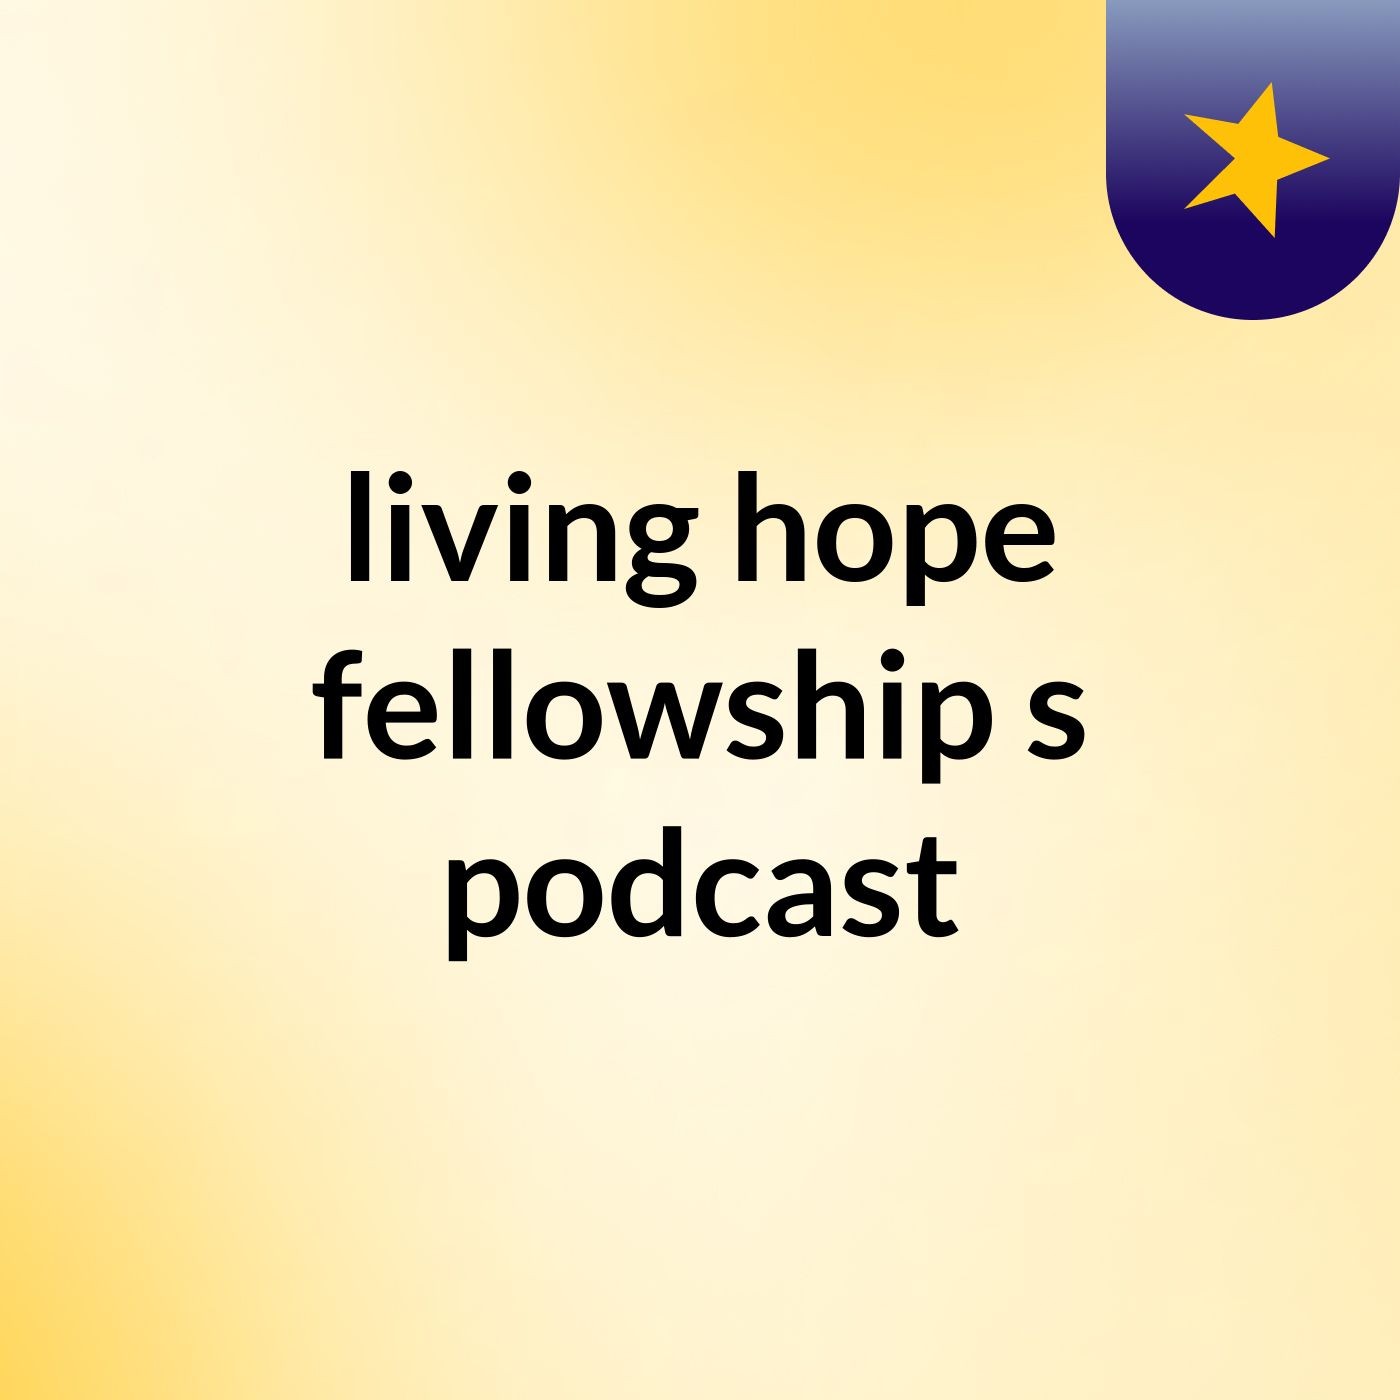 living hope fellowship's podcast